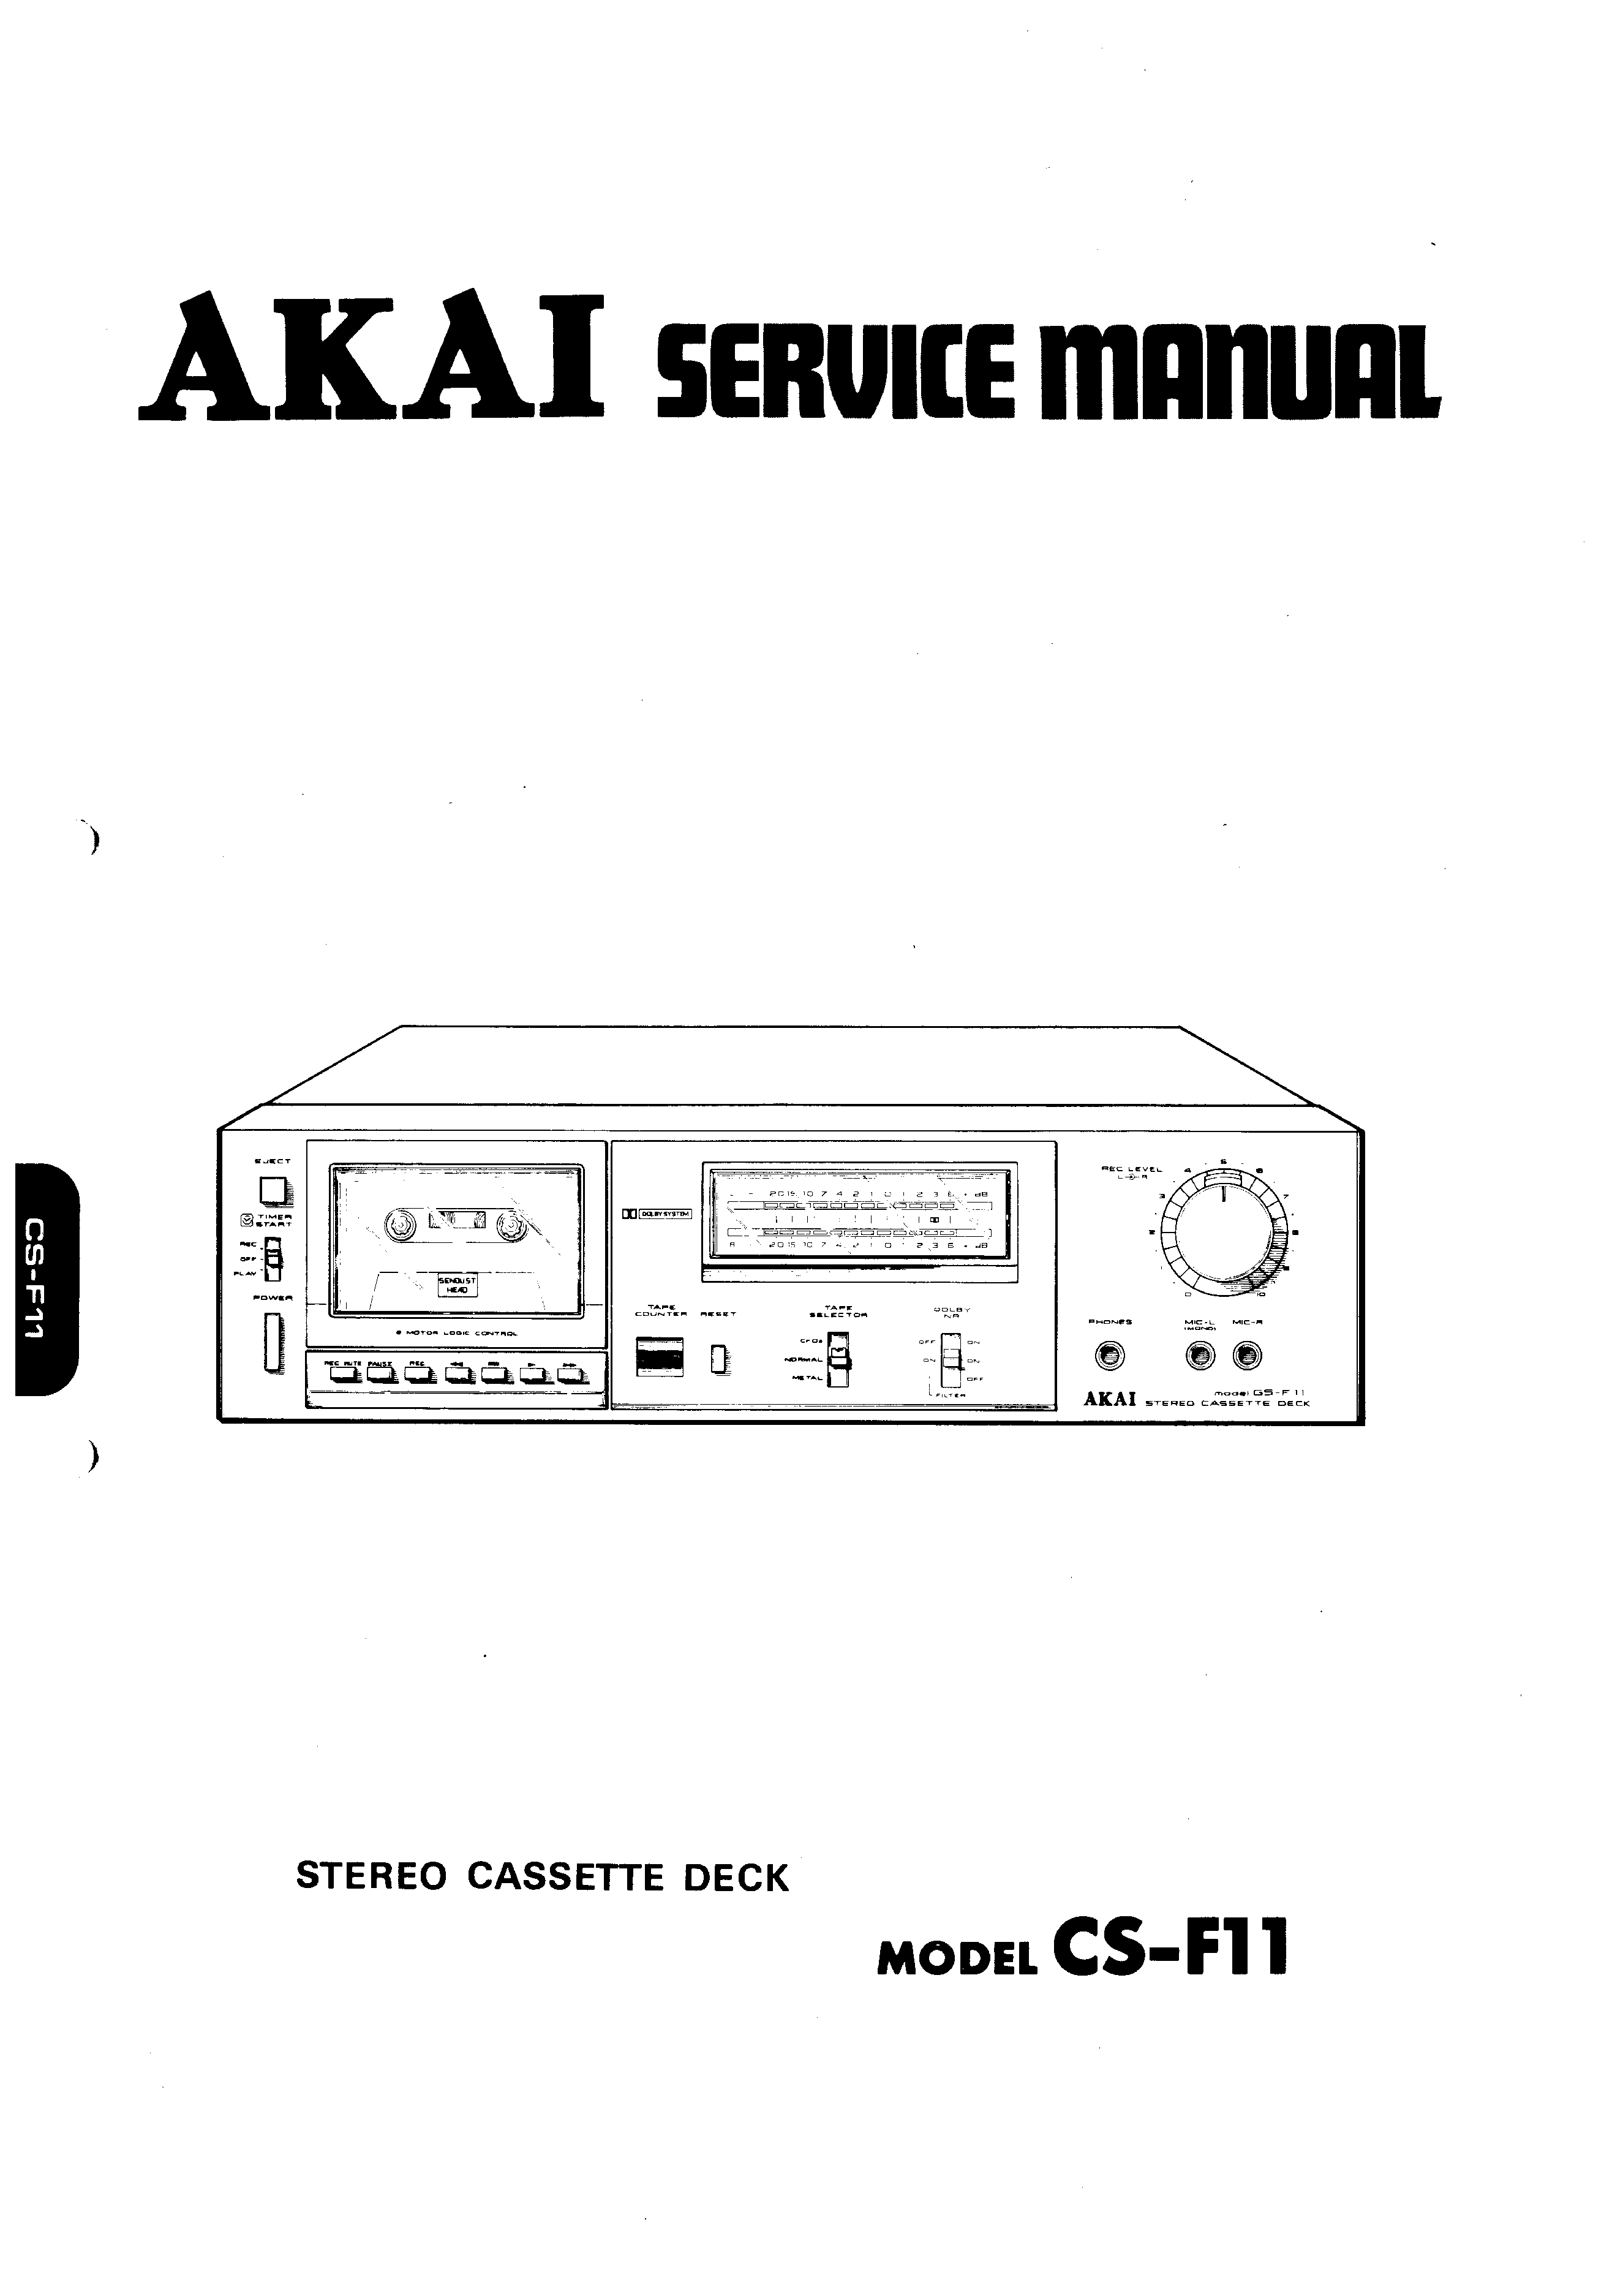 ORIGINALI Service Manual Schema Elettrico AKAI cs-f11 